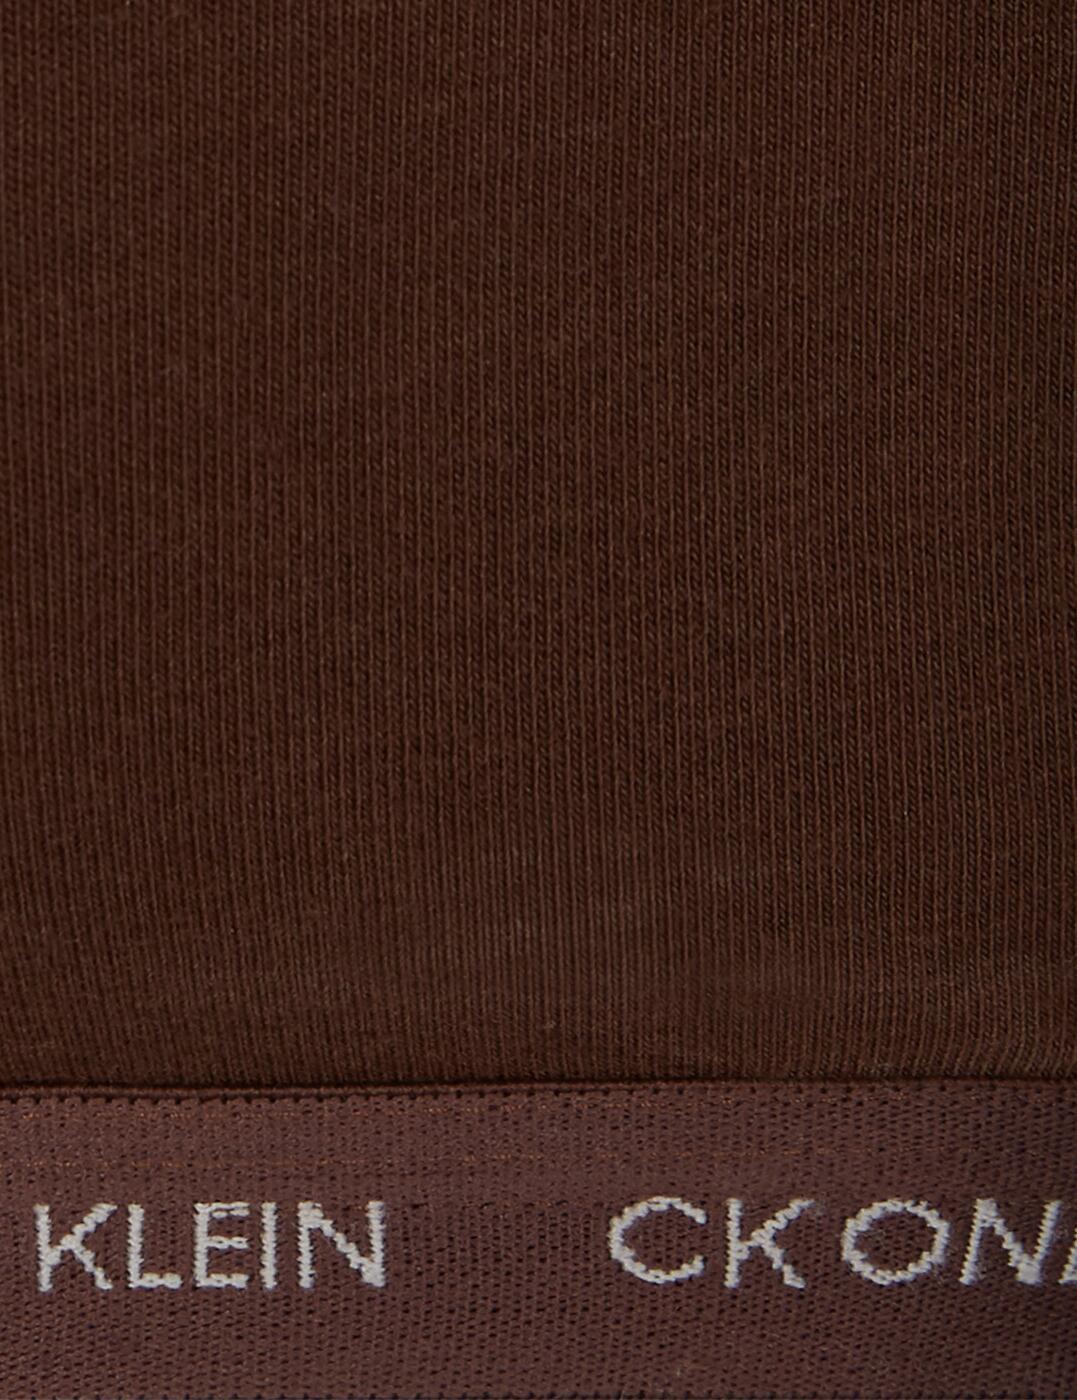 000QF6814E Calvin Klein CK One Cotton Plus Size Unlined Bralette (2PK) -  000QF6814E Sandalwood